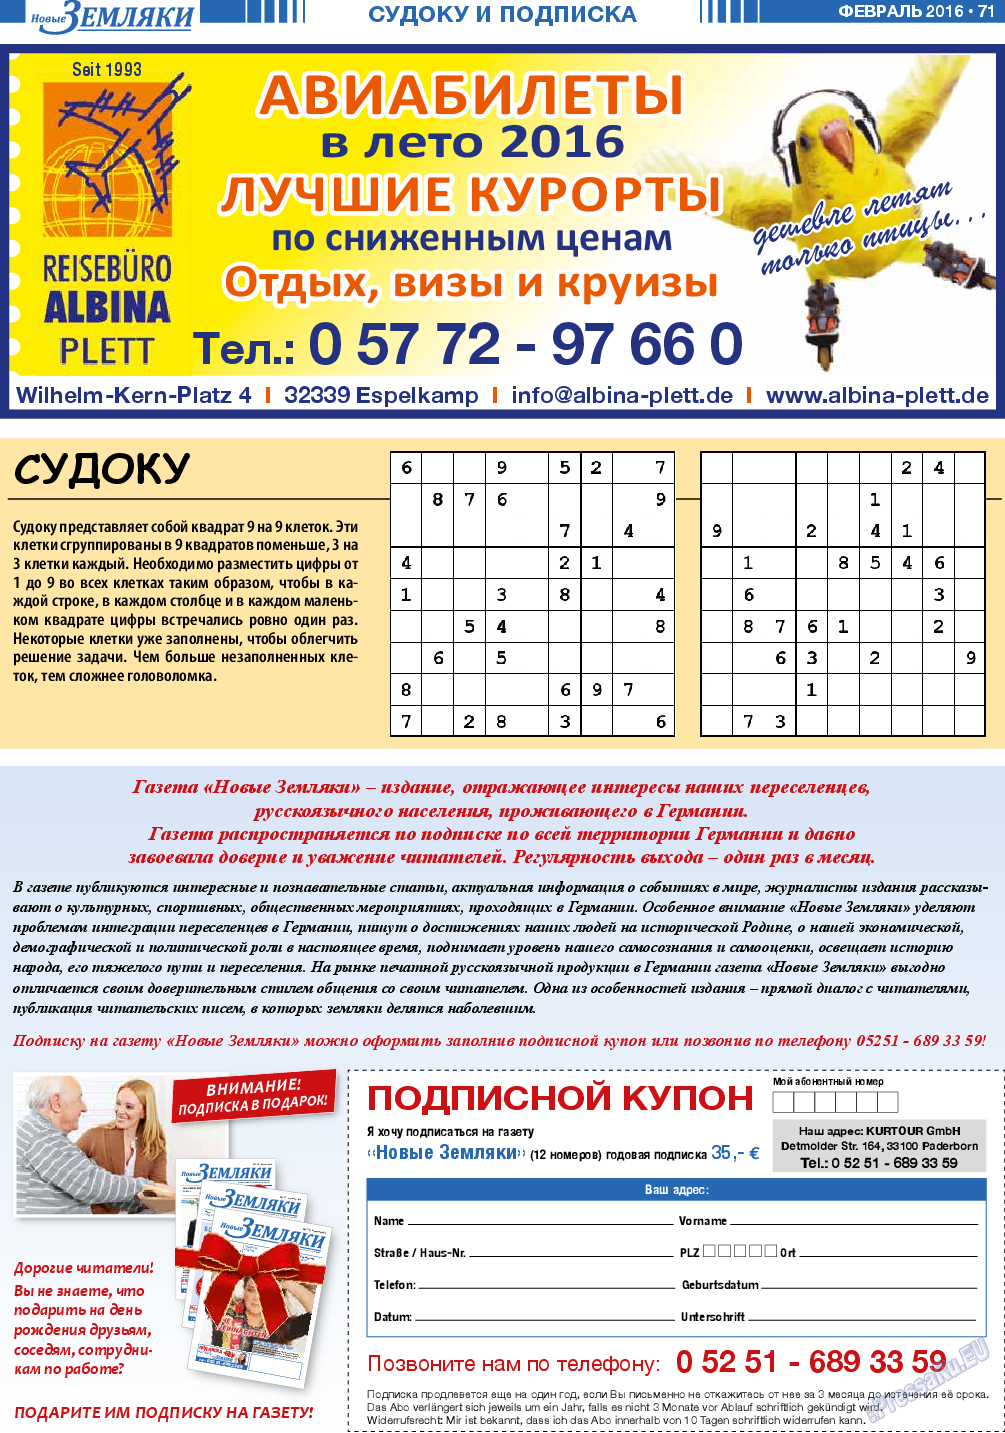 Новые Земляки (газета). 2016 год, номер 2, стр. 71